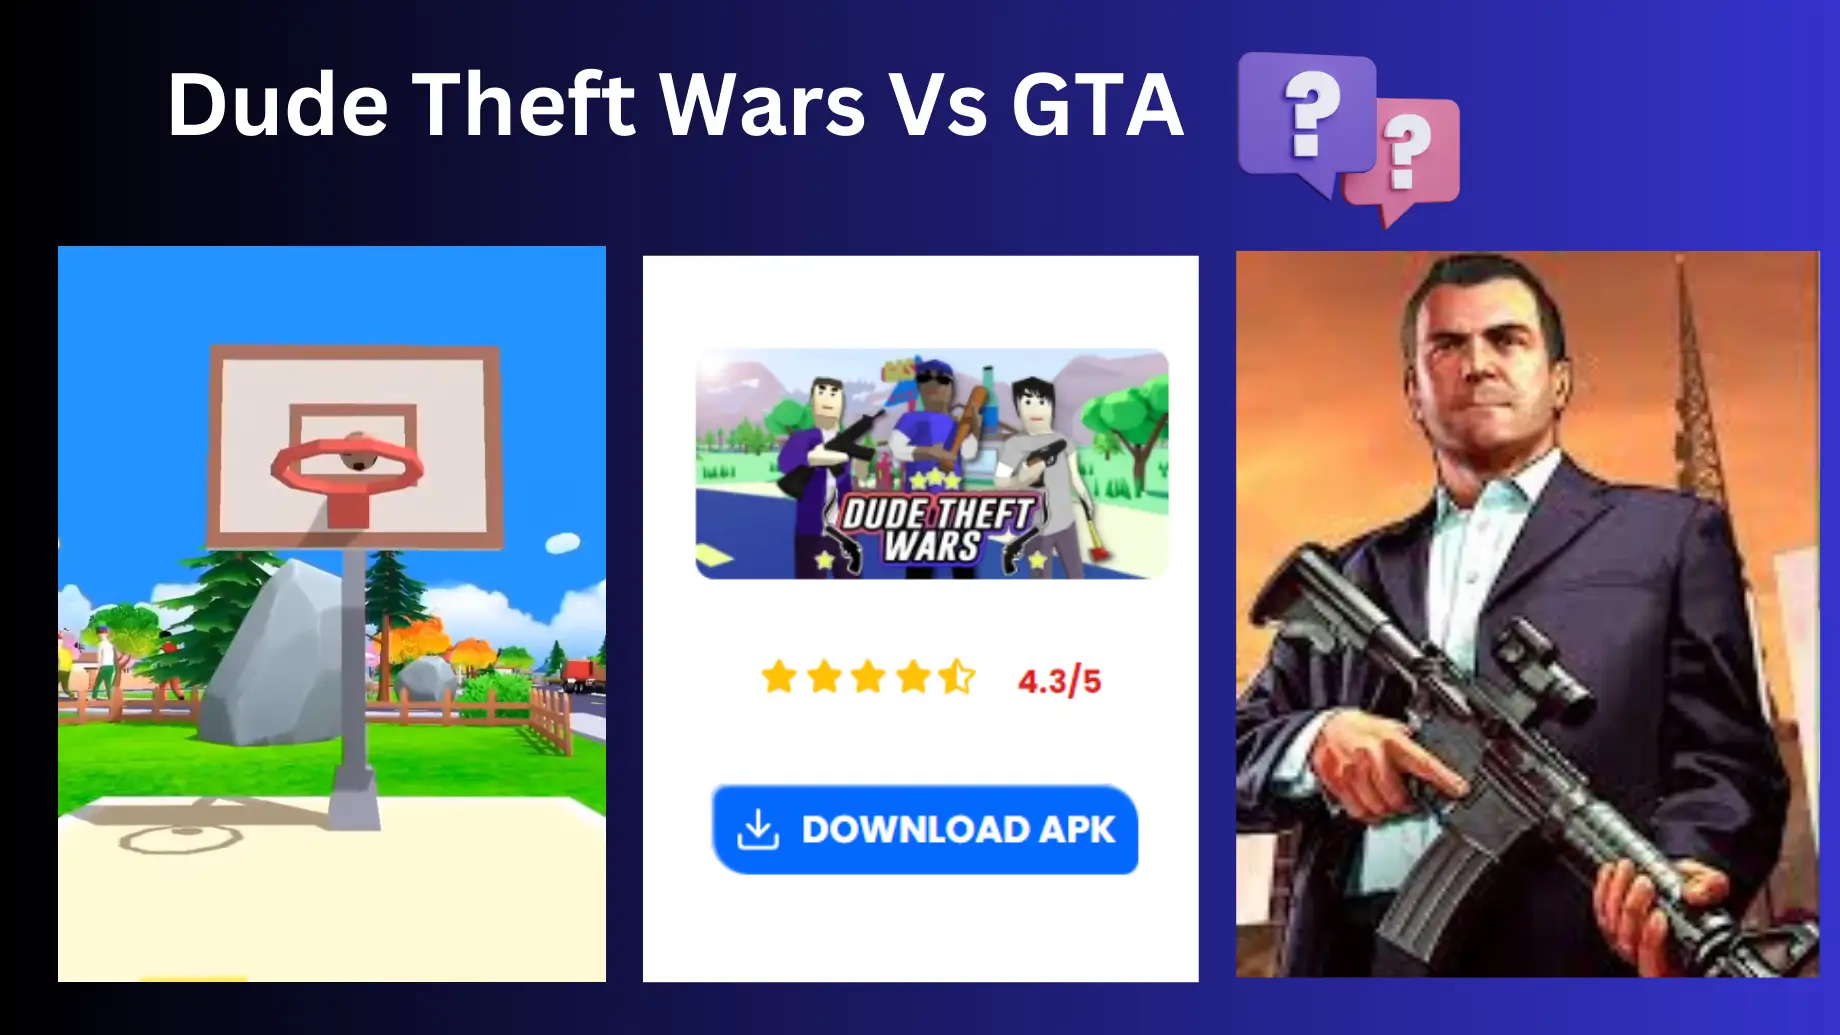 Dude Theft Wars Vs GTA